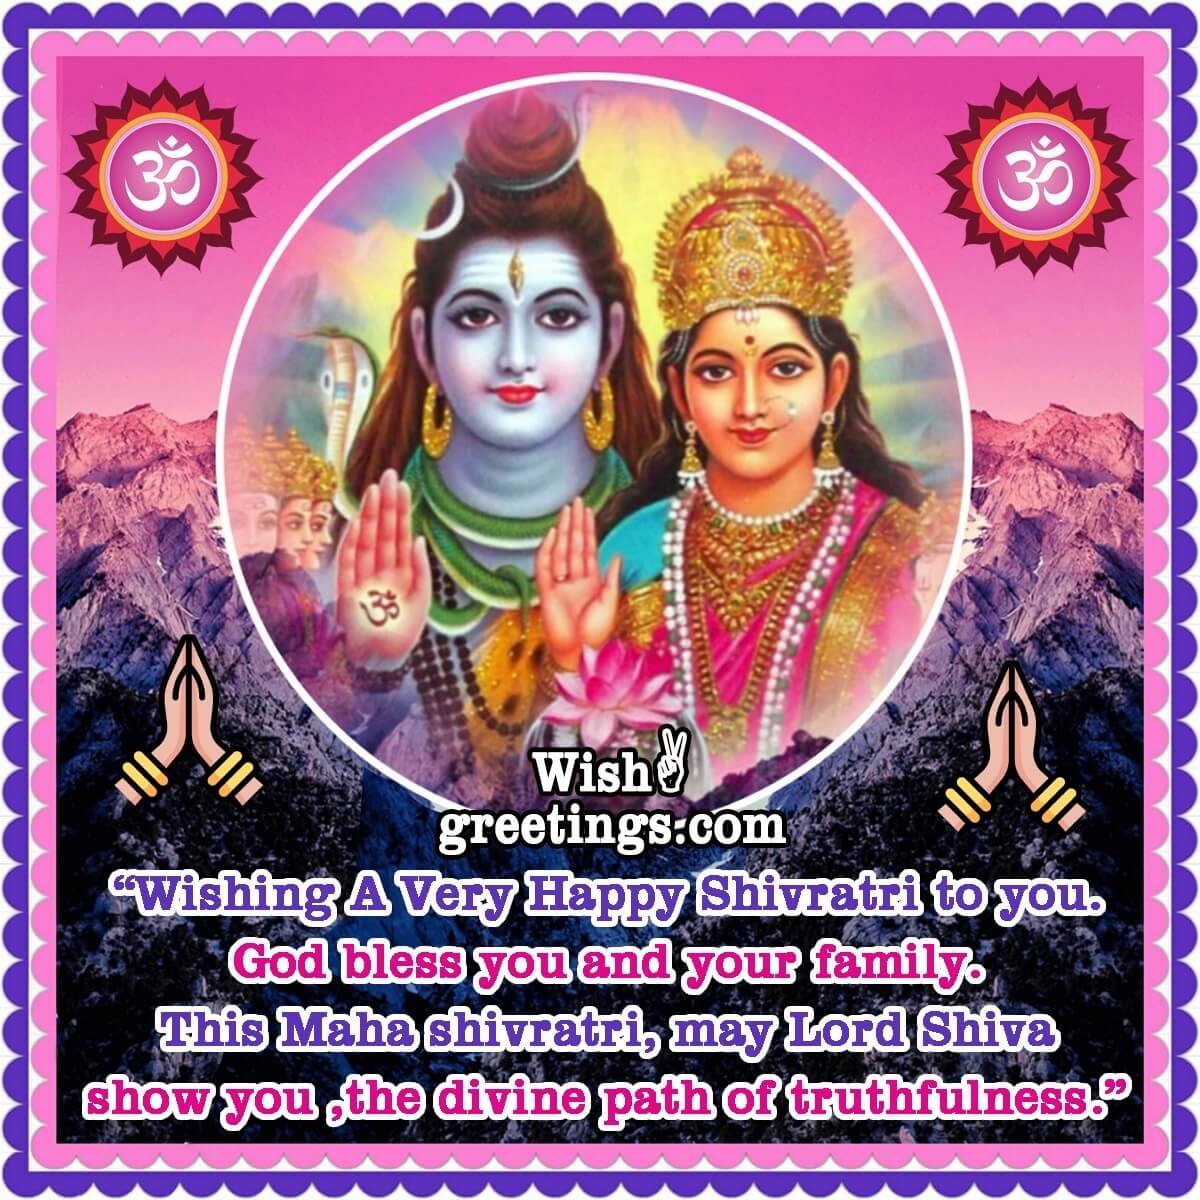 Wishing A Very Happy Maha Shivratri